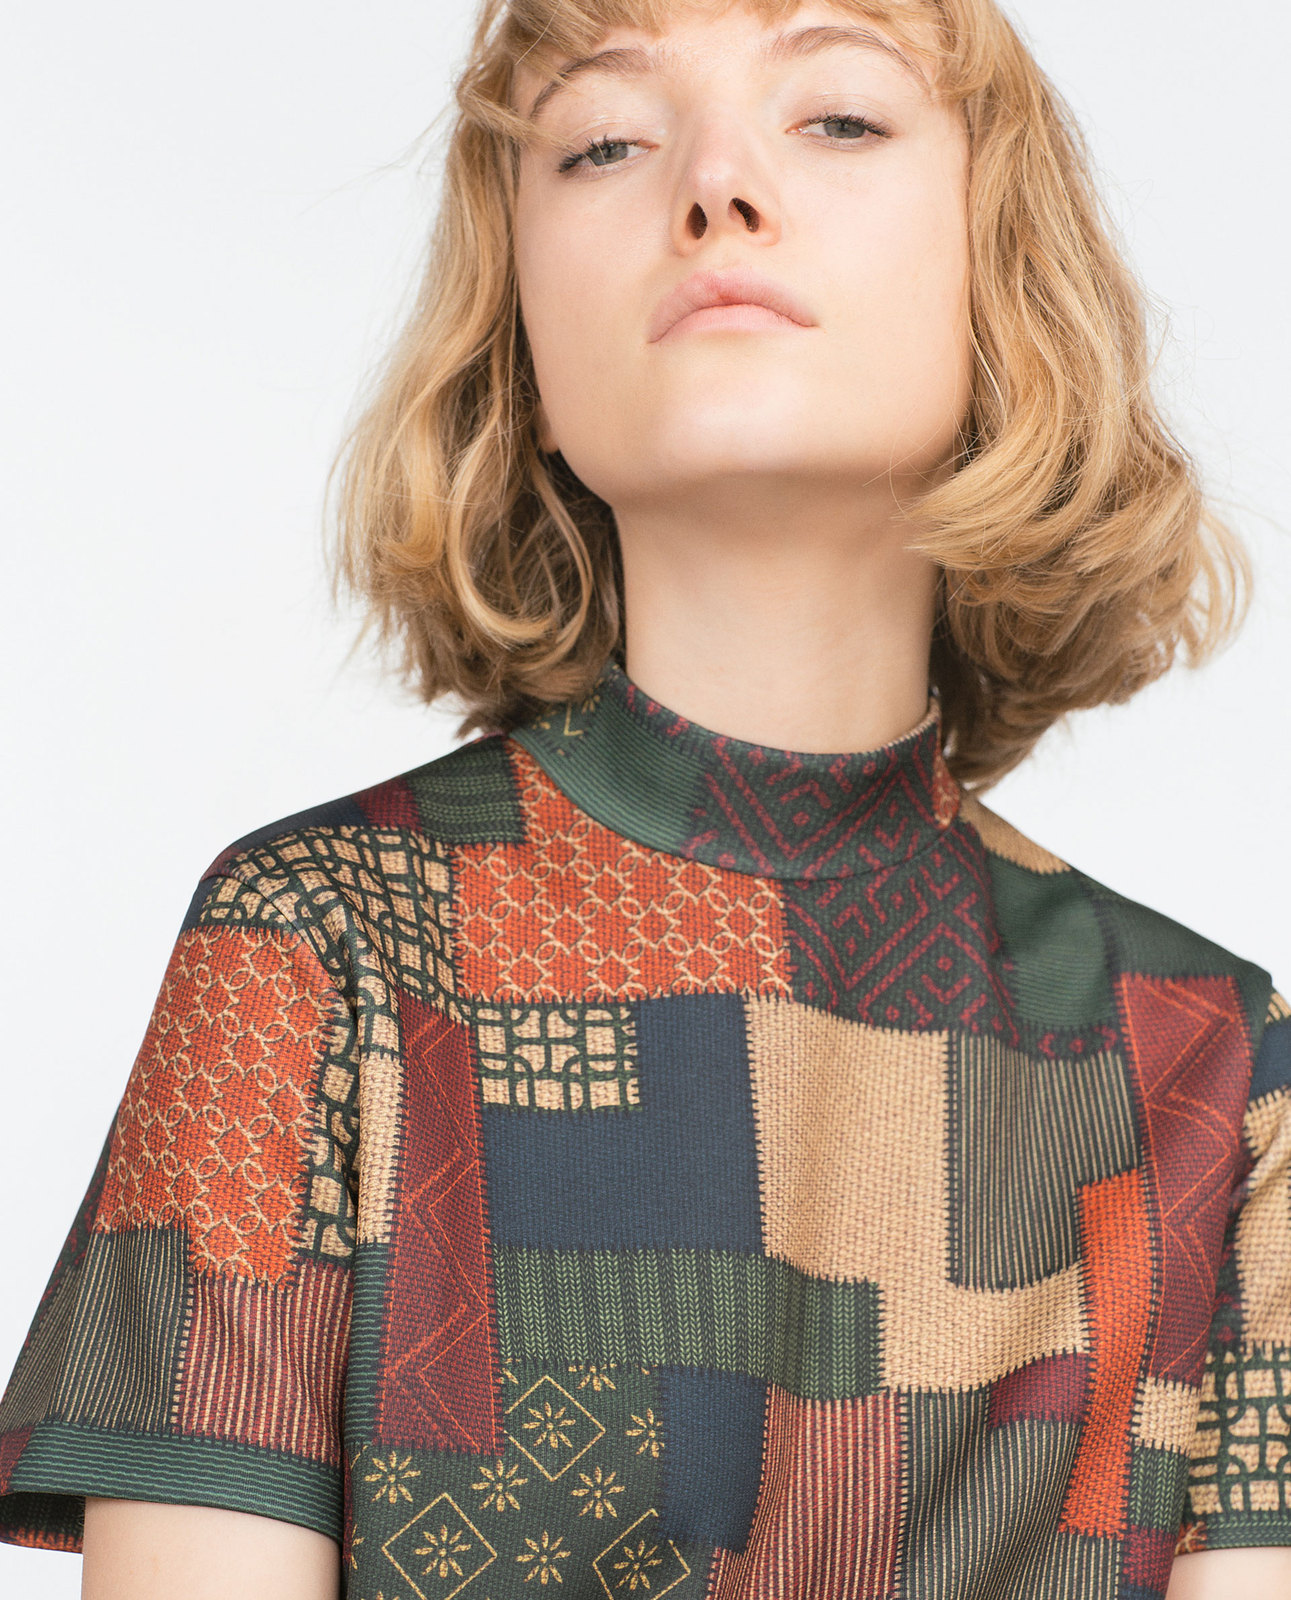 Zara szép női mintás magas nyakú ruha 2015 fotója